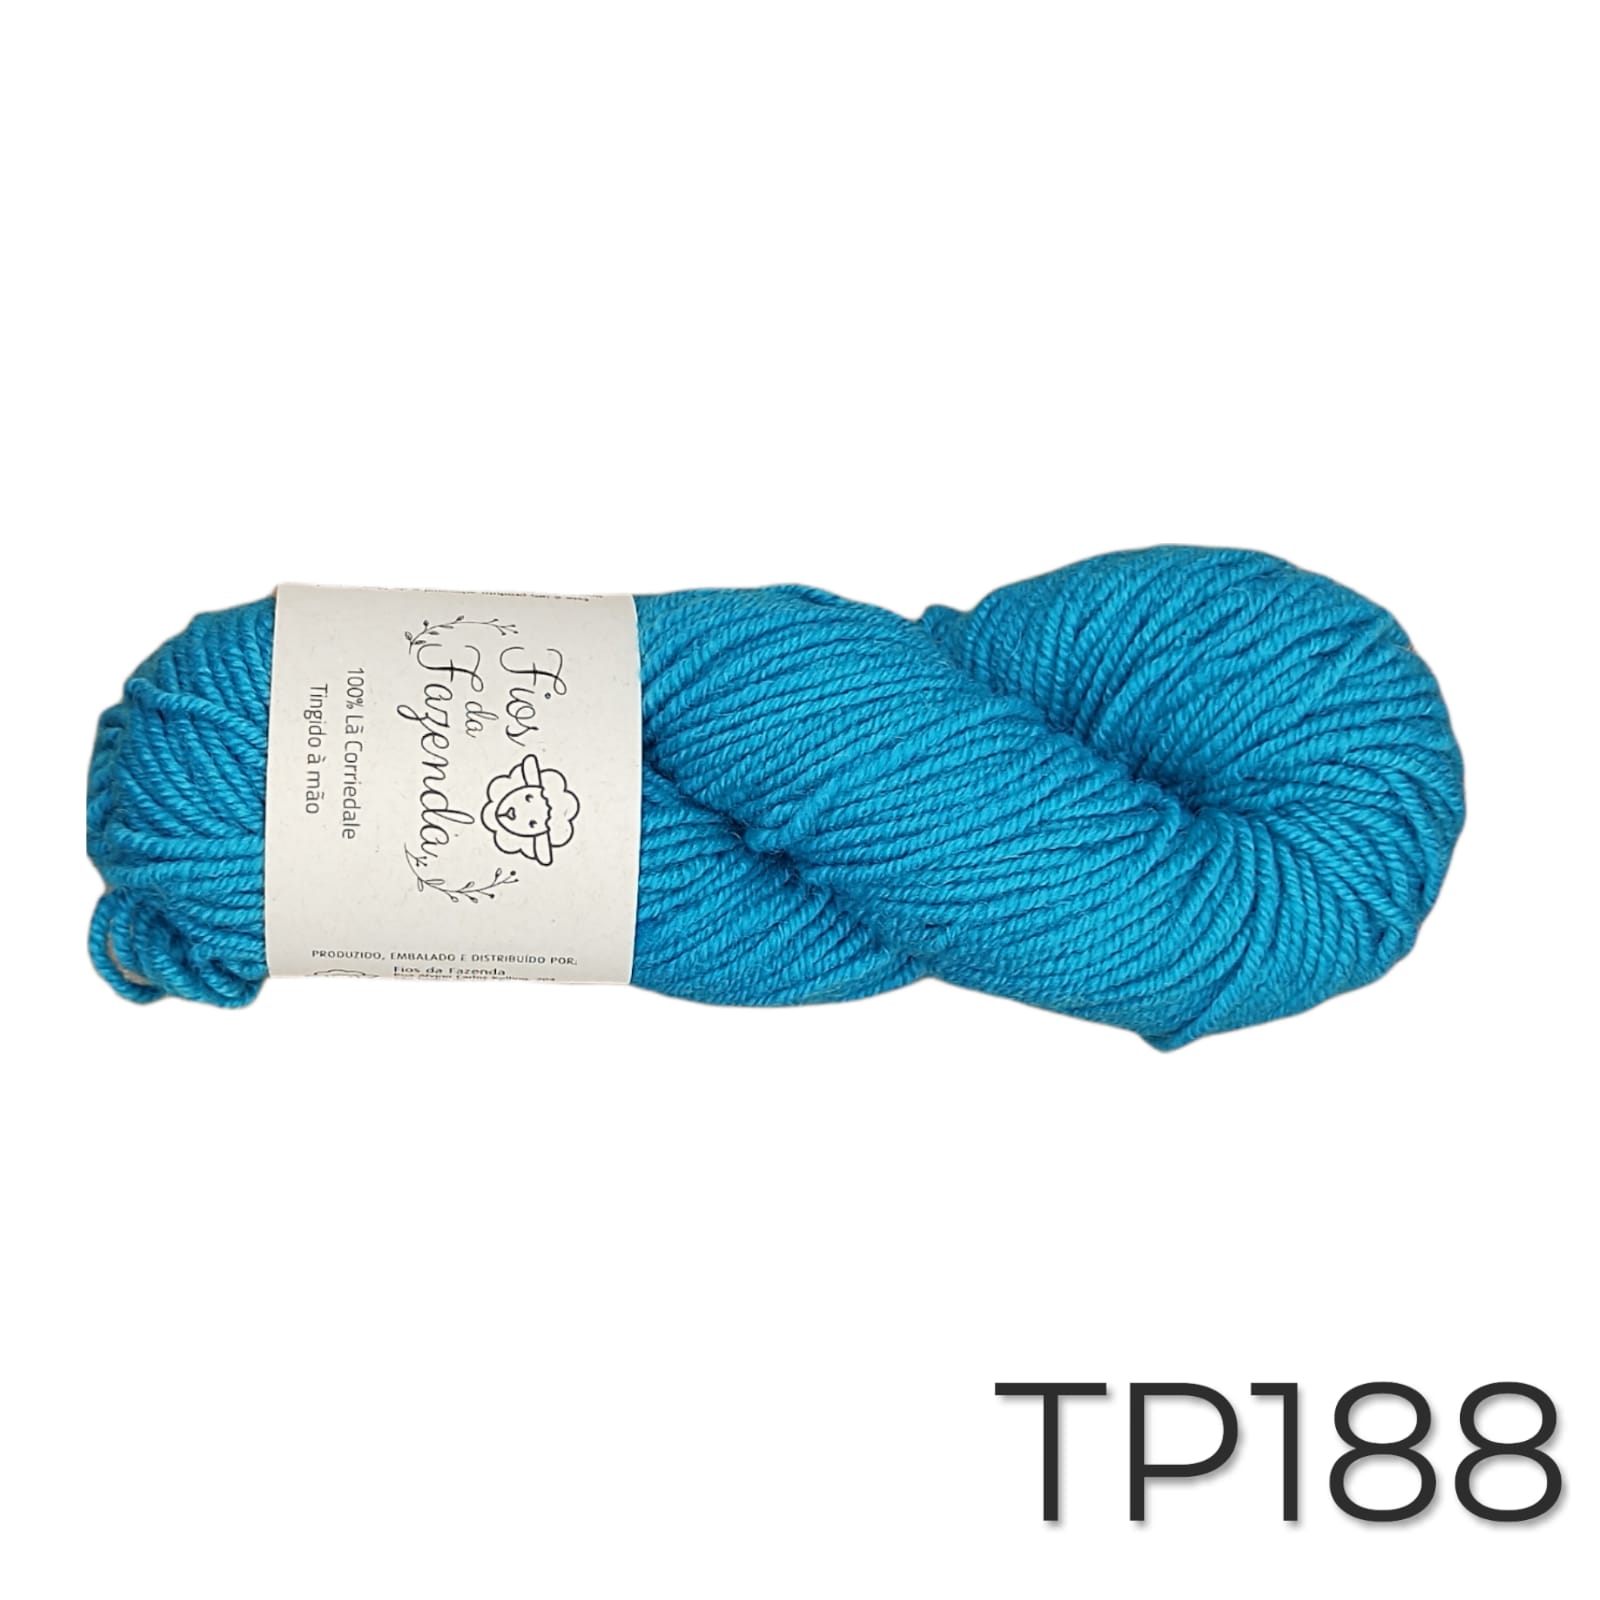 Tapiz -  Fio de lã para Tapeçaria - 115m / 100g